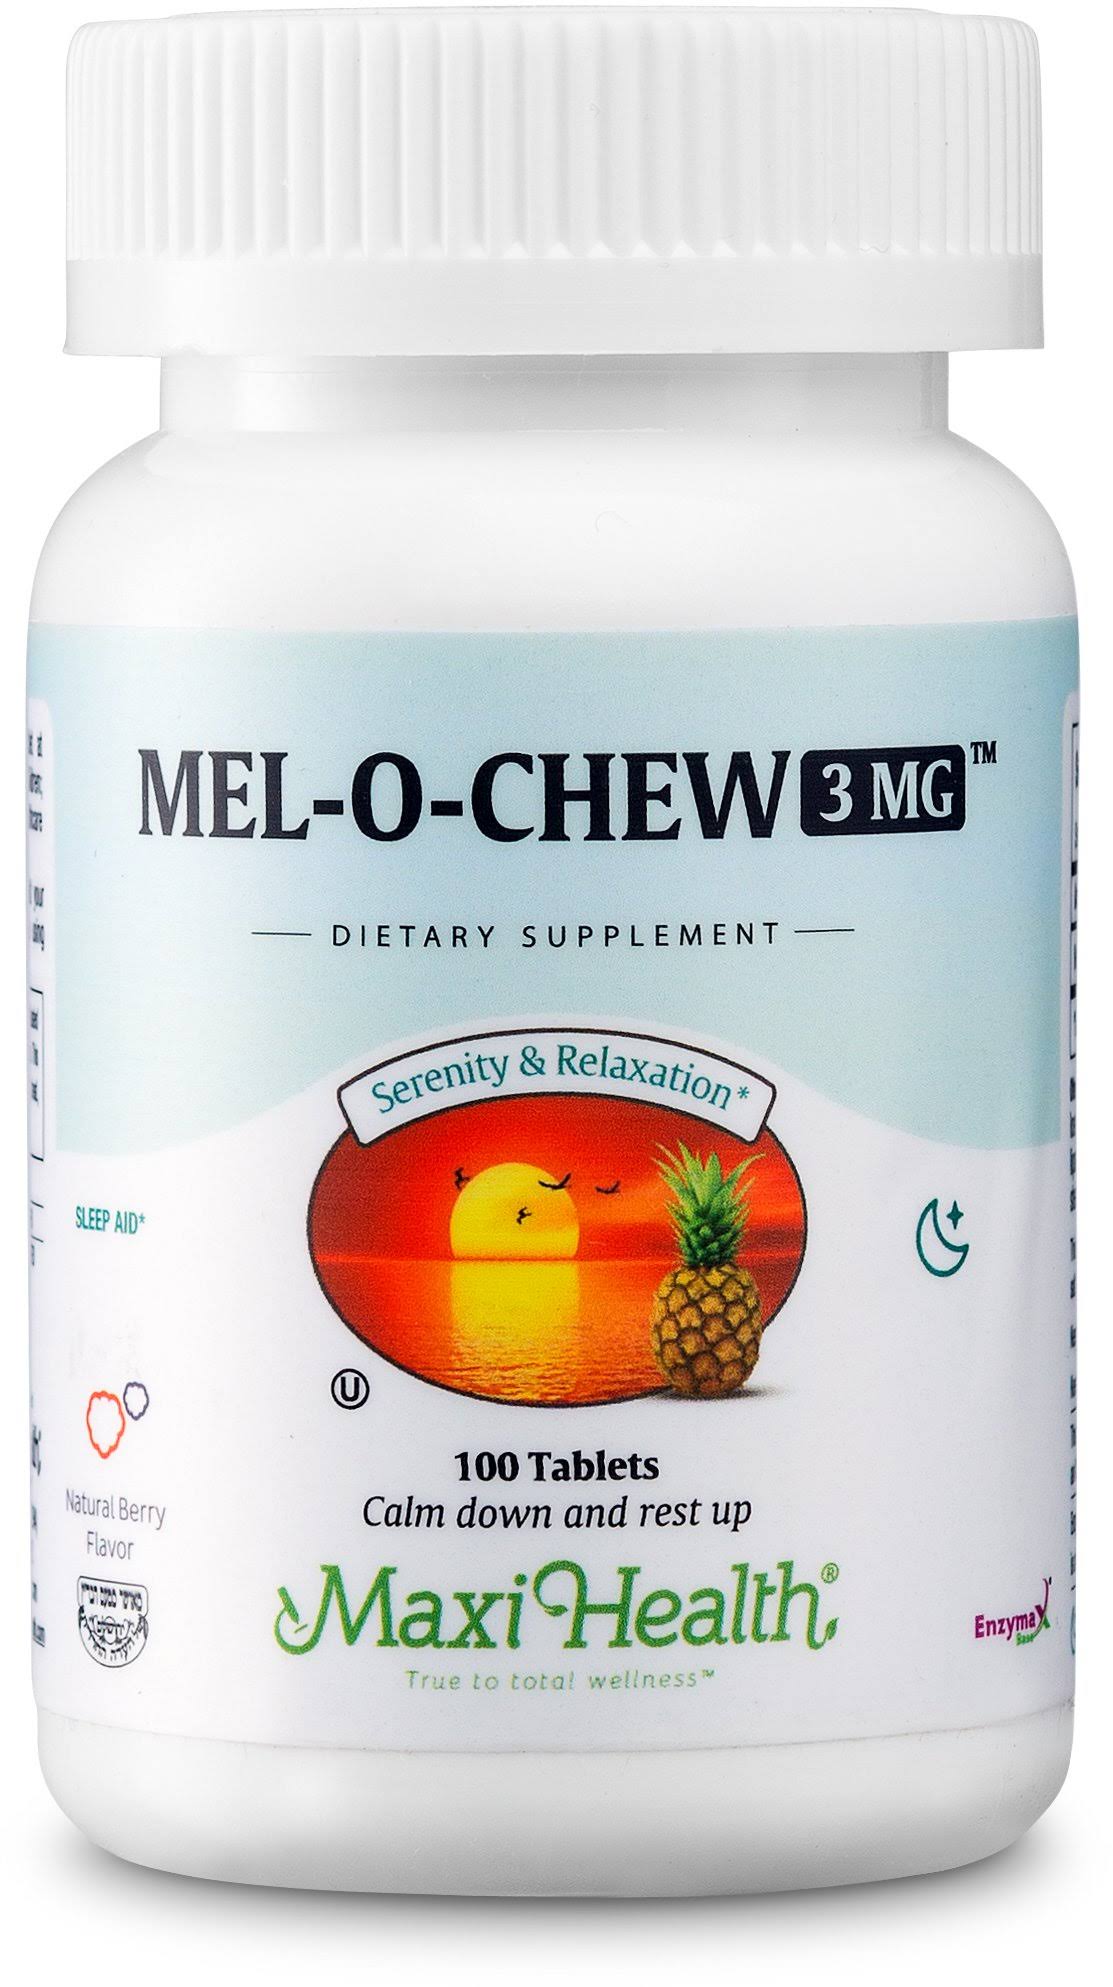 Maxi Health Mel-o-chew Melatonin Sleep Aid Supplement - 100 Tablets